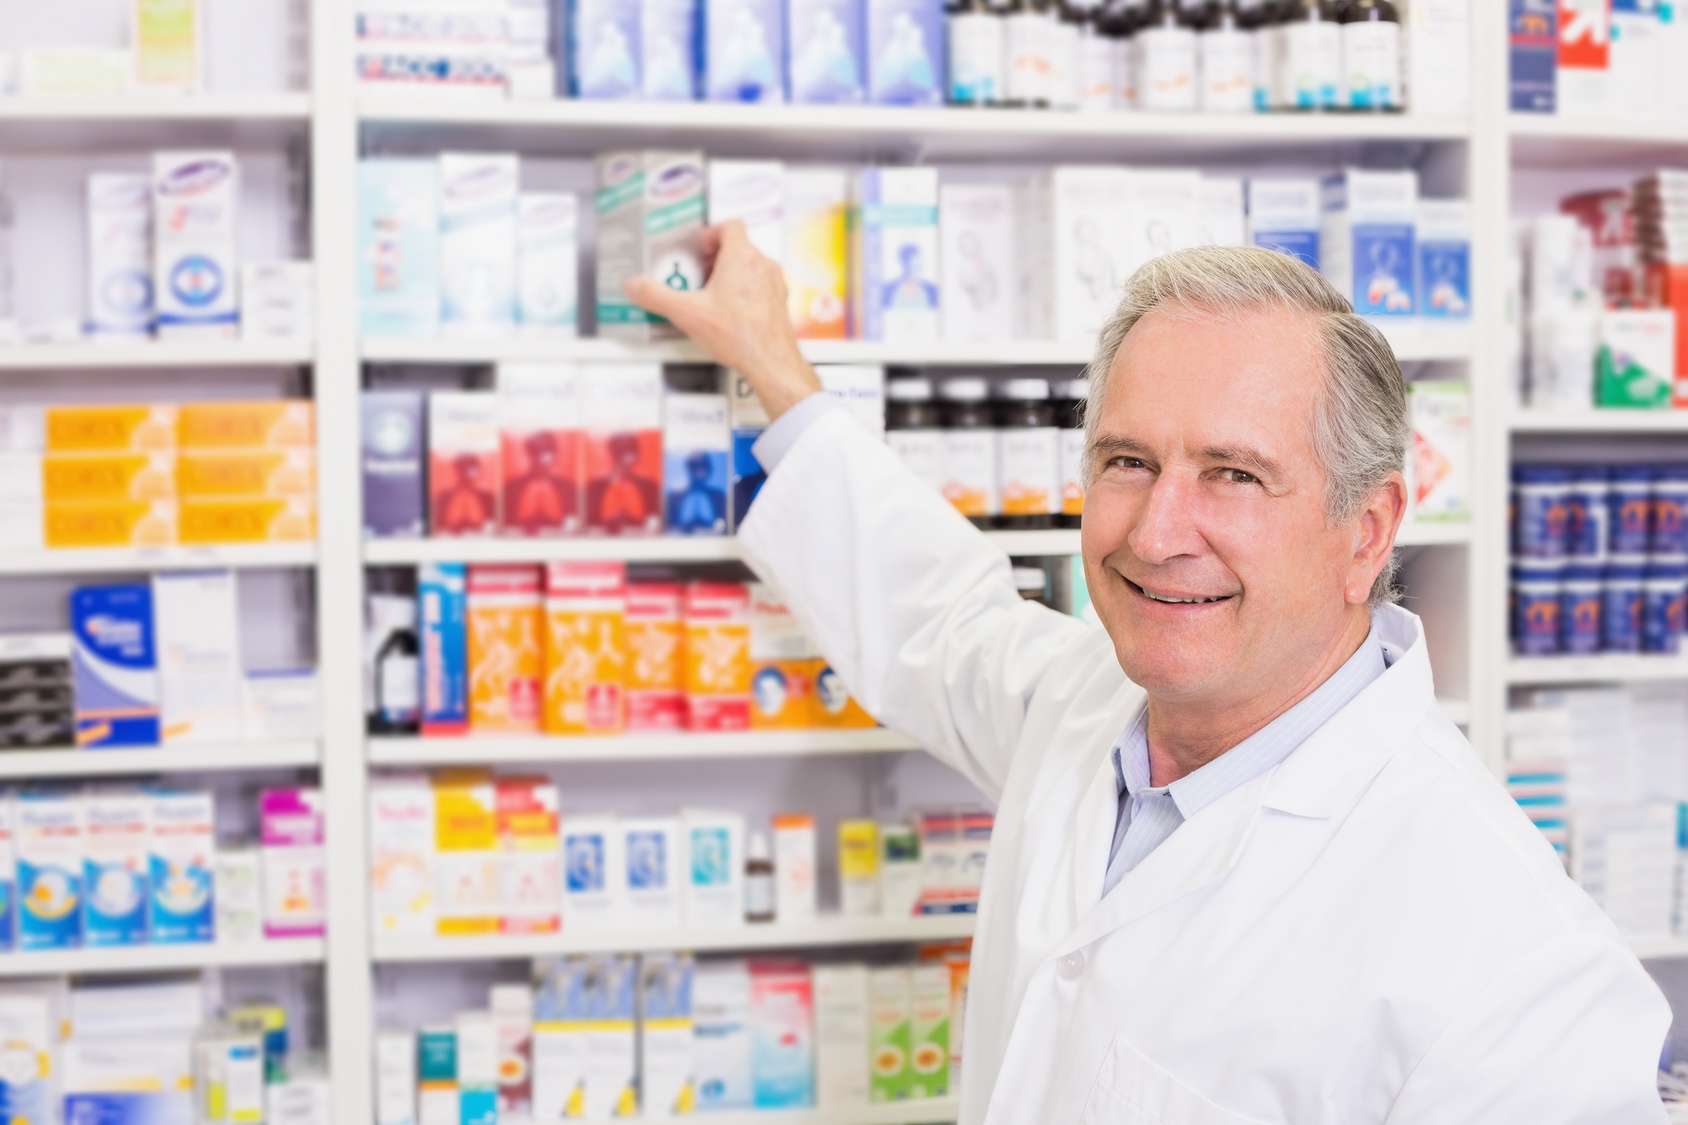 Finding Humor in Pharmacy Work